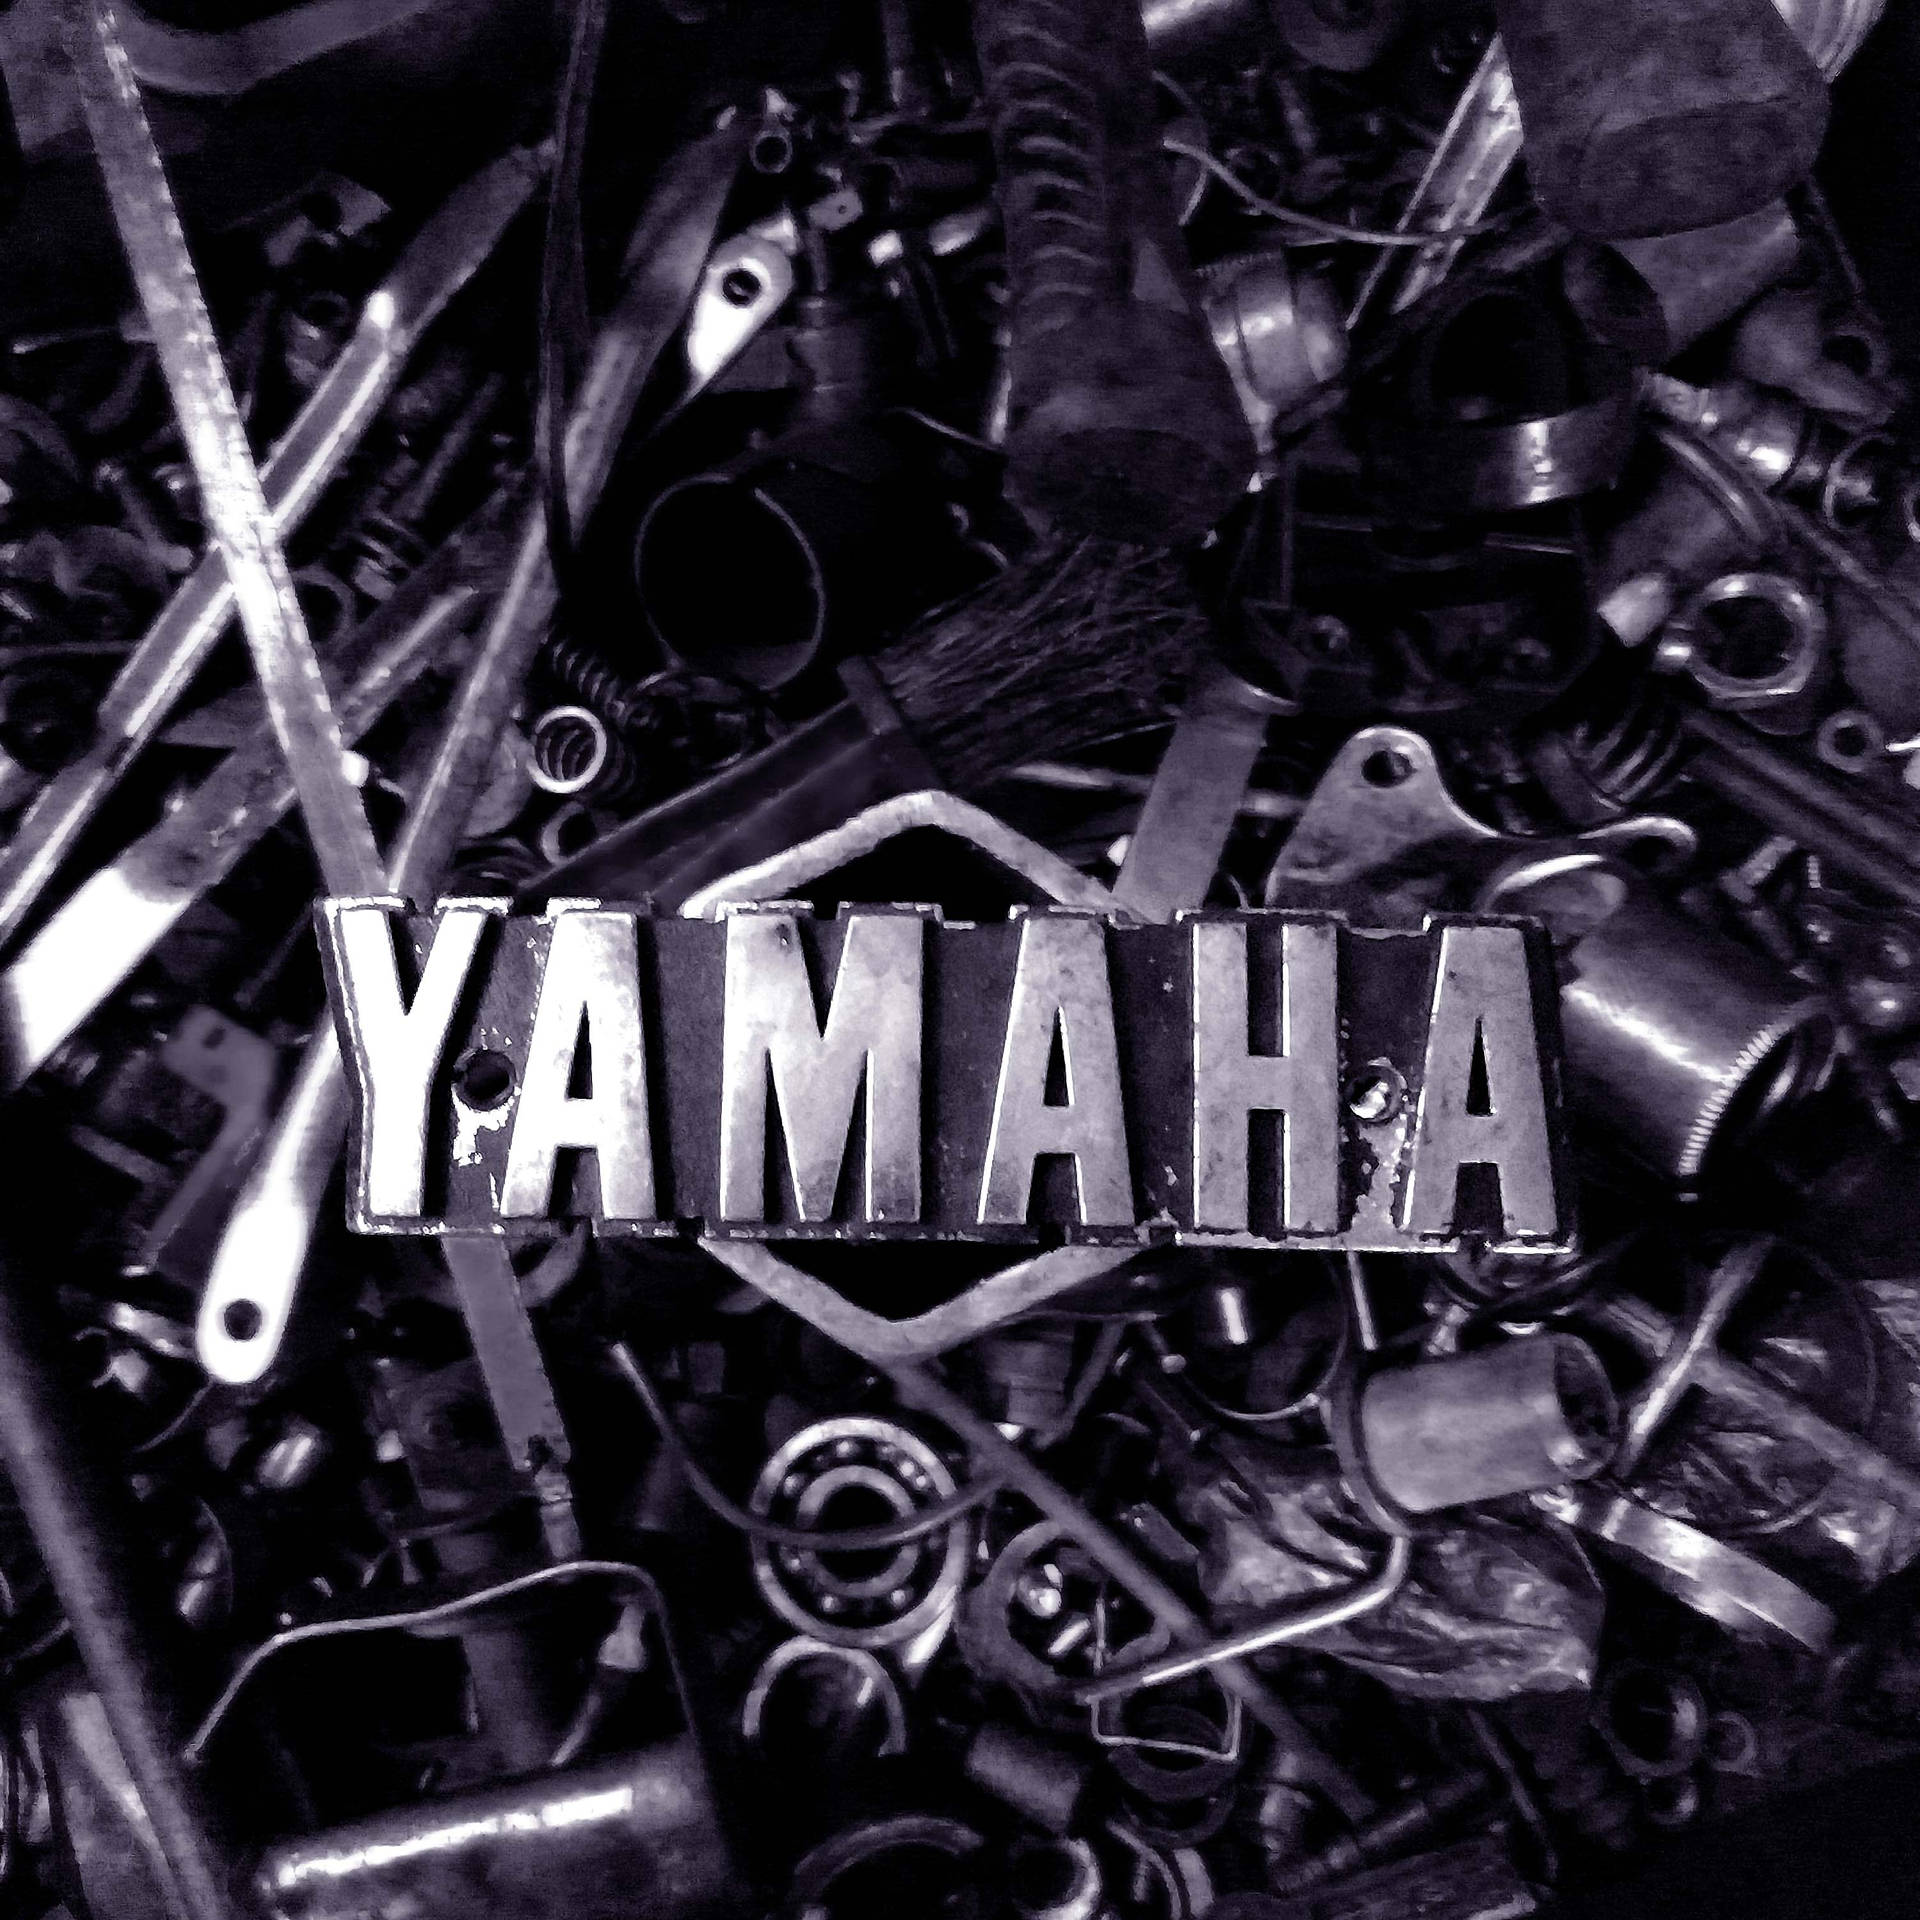 Repuestospara Motocicletas Yamaha Rx100. Fondo de pantalla